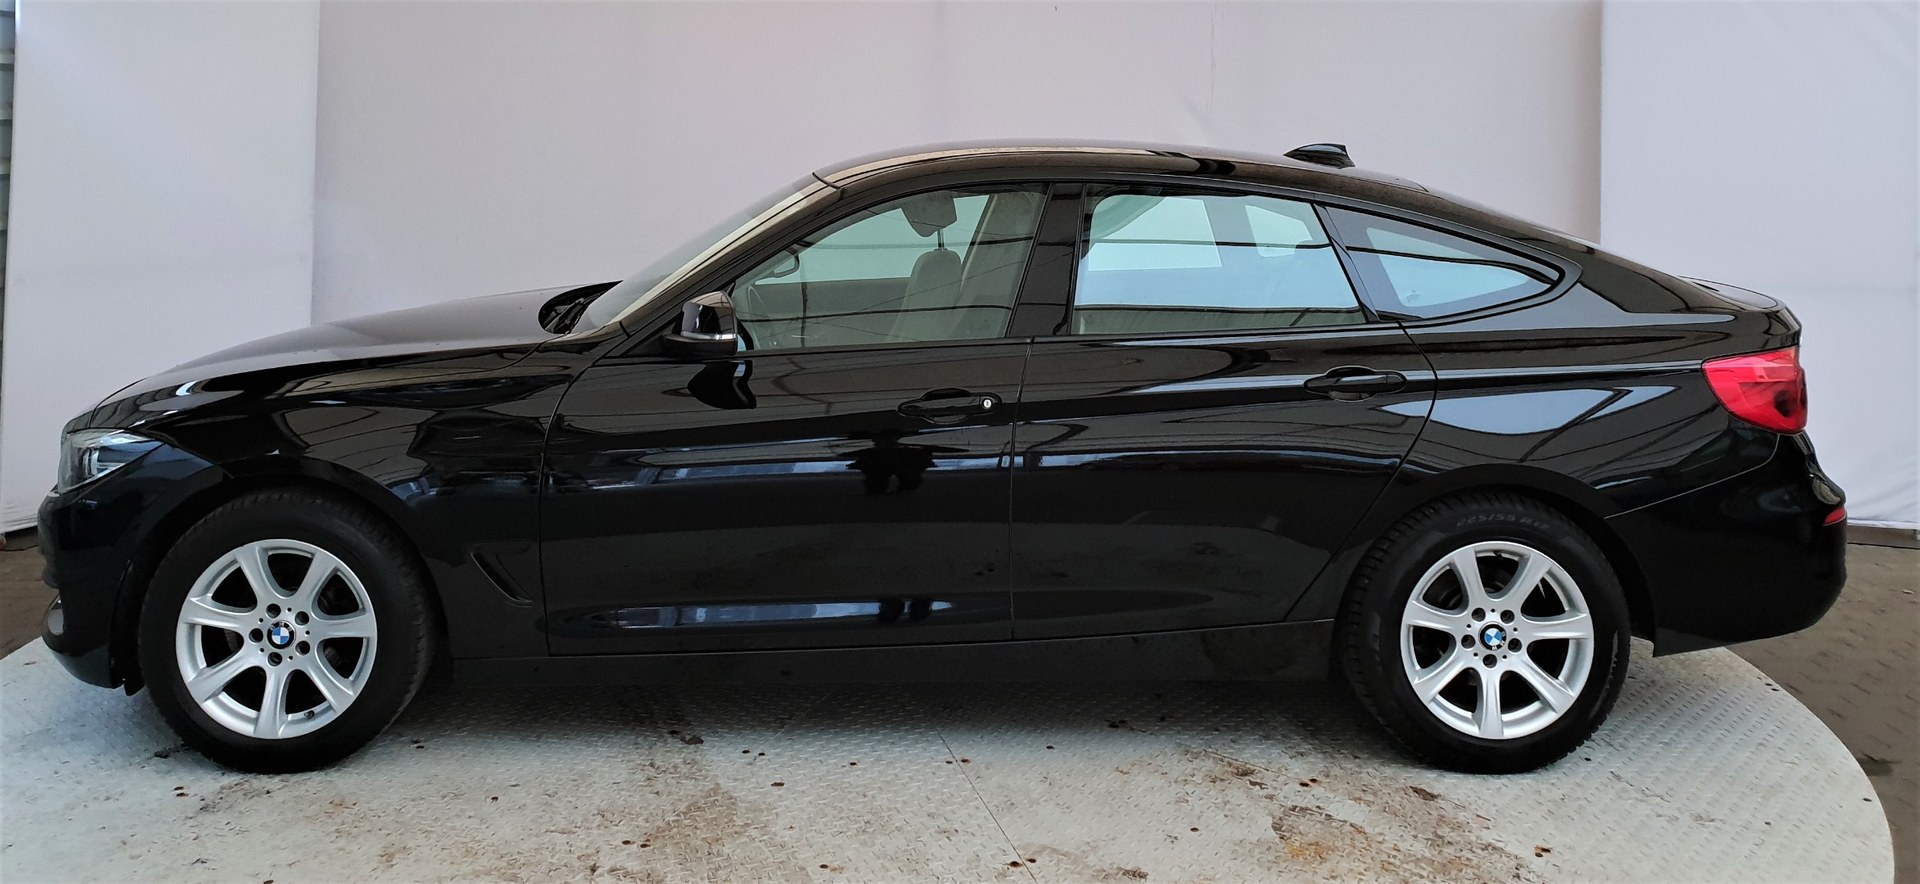 BMW Seria 3 Gran Turismo 318d Advantage Czarny używany